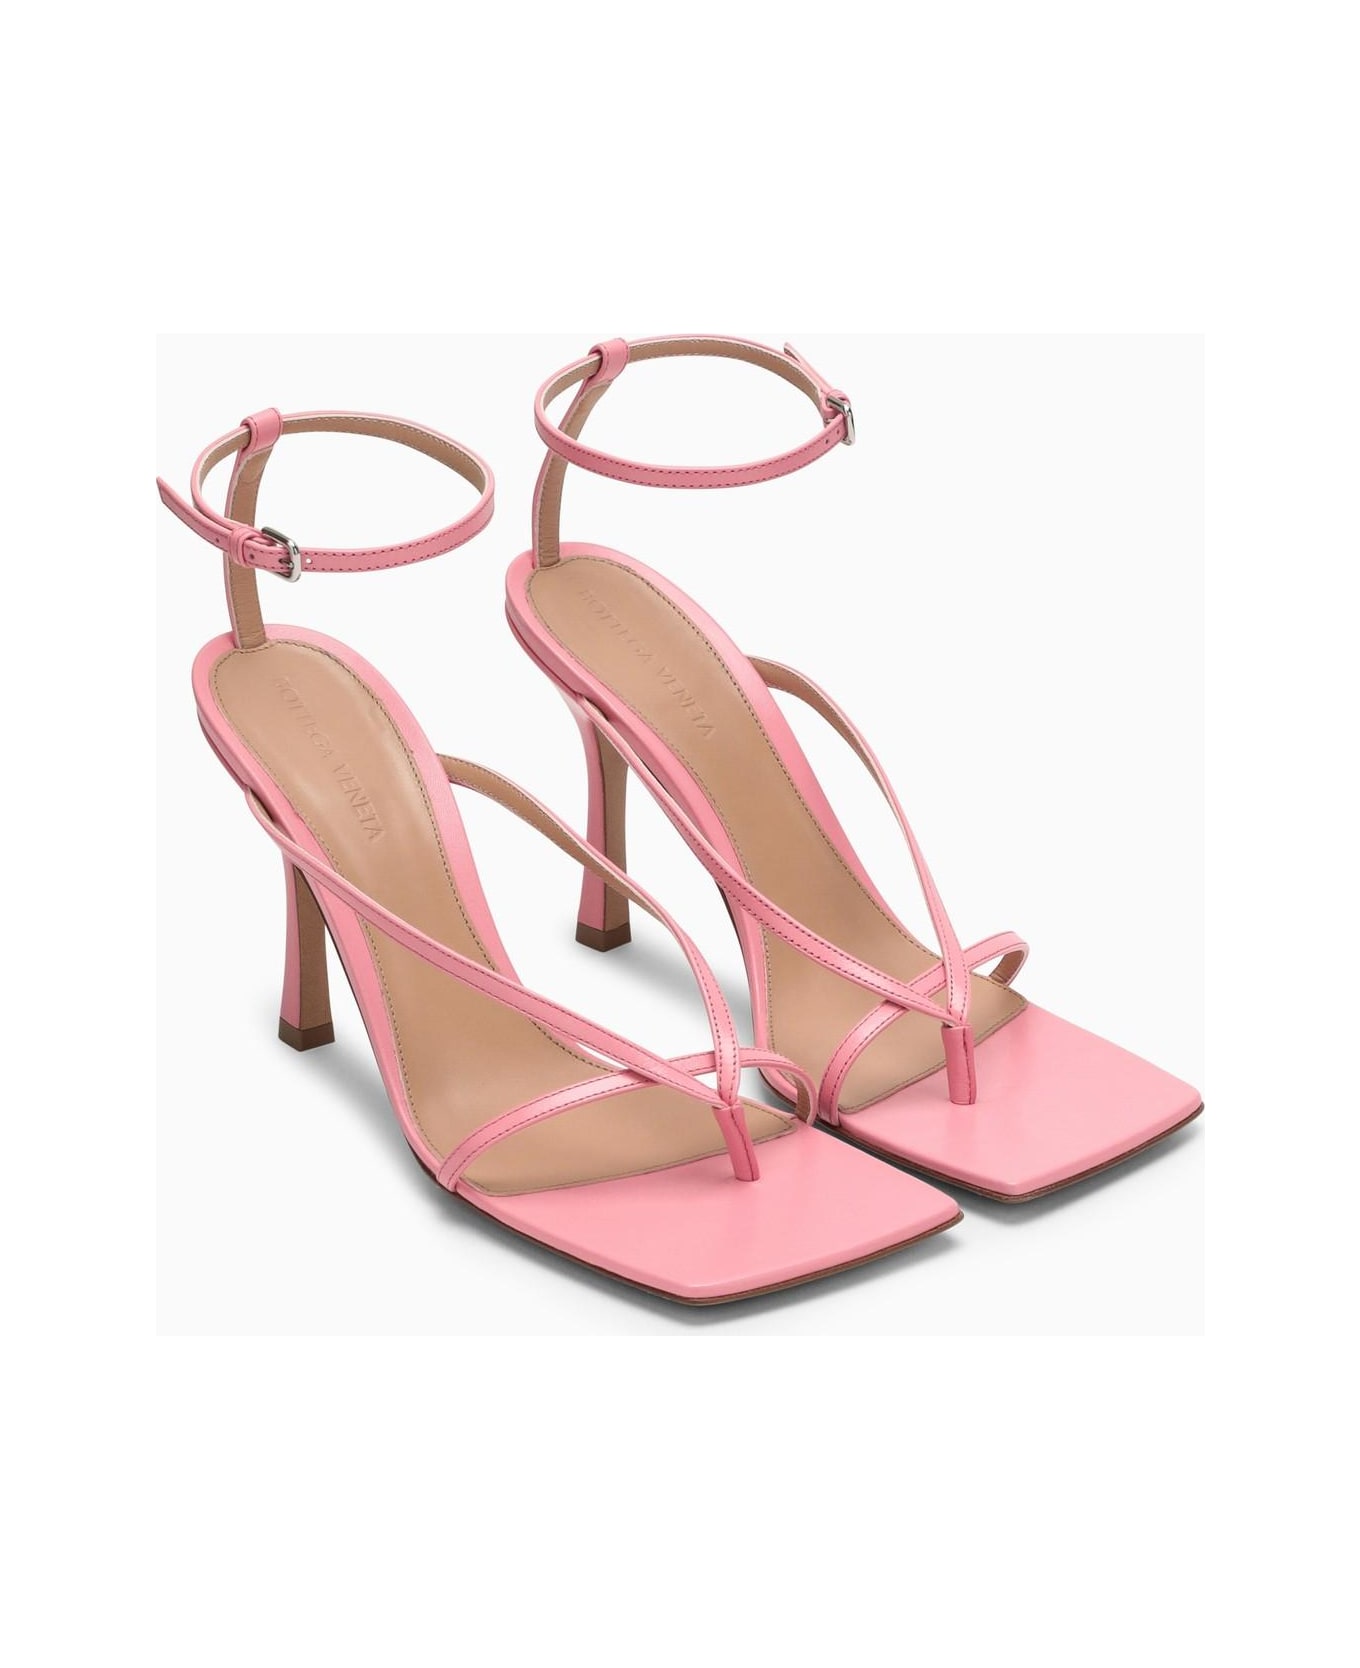 Bottega Veneta Squared Toe Strappy Sandals - Blossom